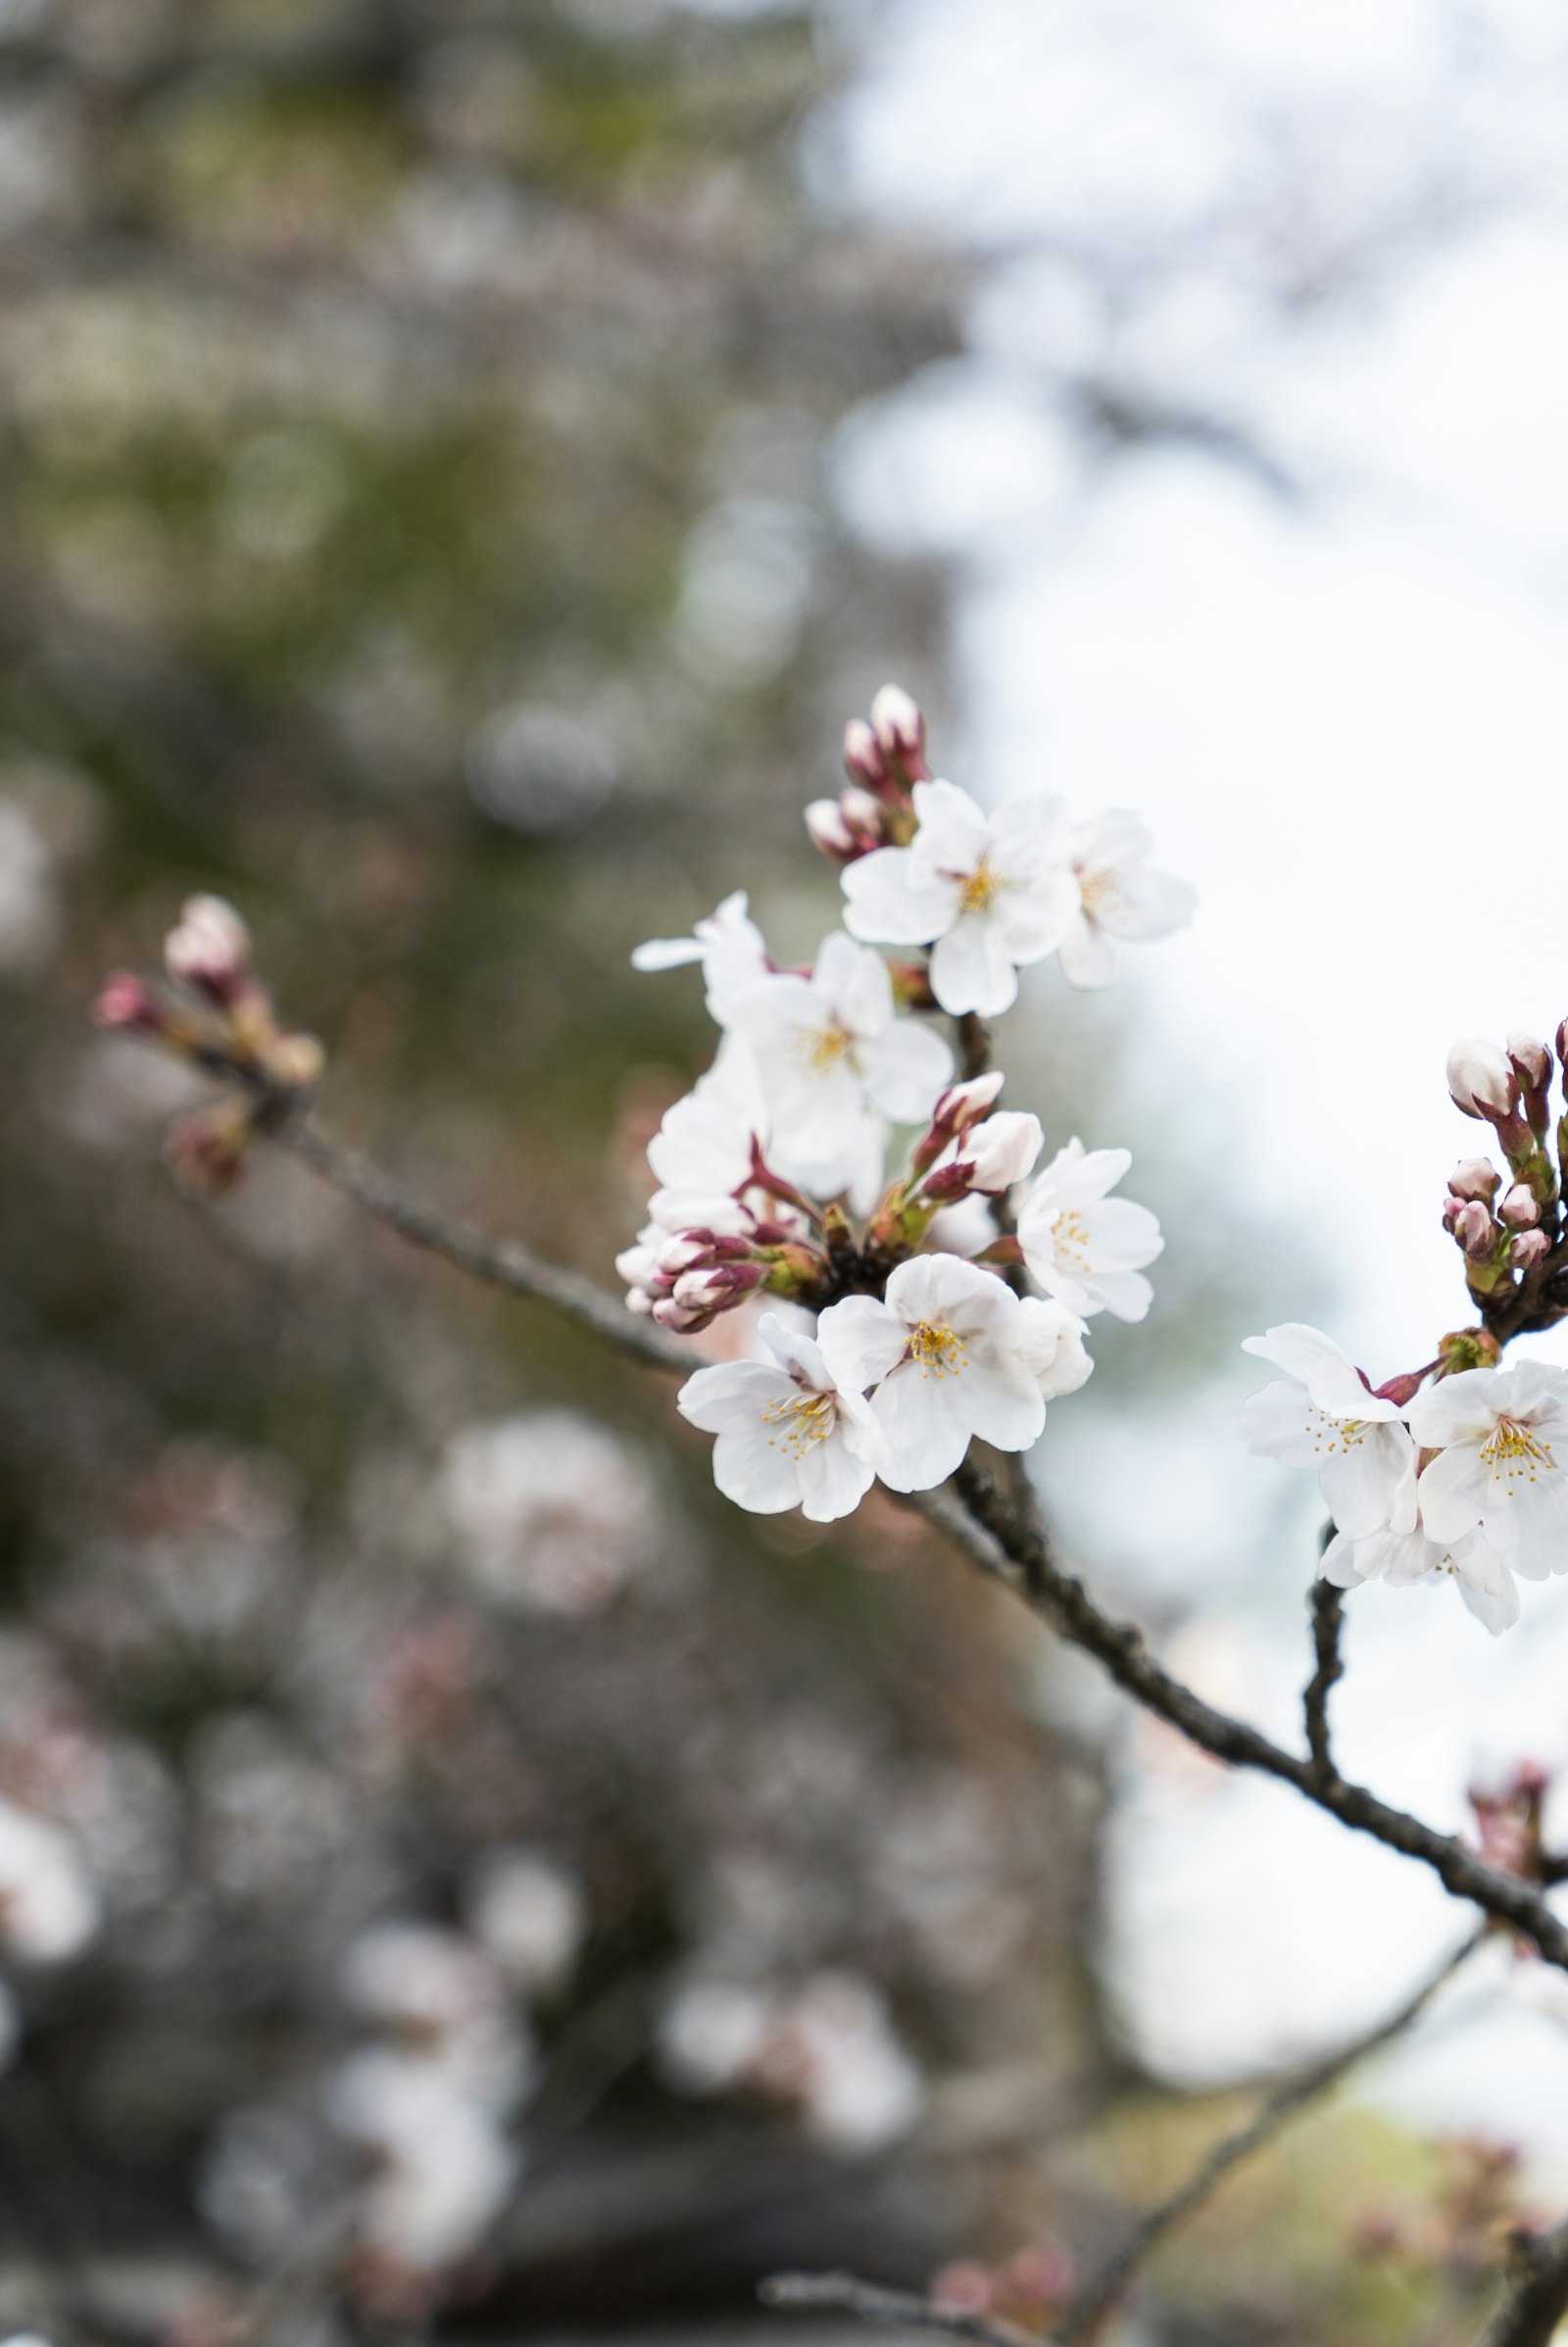 Sony a7S + Sony Vario Tessar T* FE 24-70mm F4 ZA OSS sample photo. White cherry blossom in photography